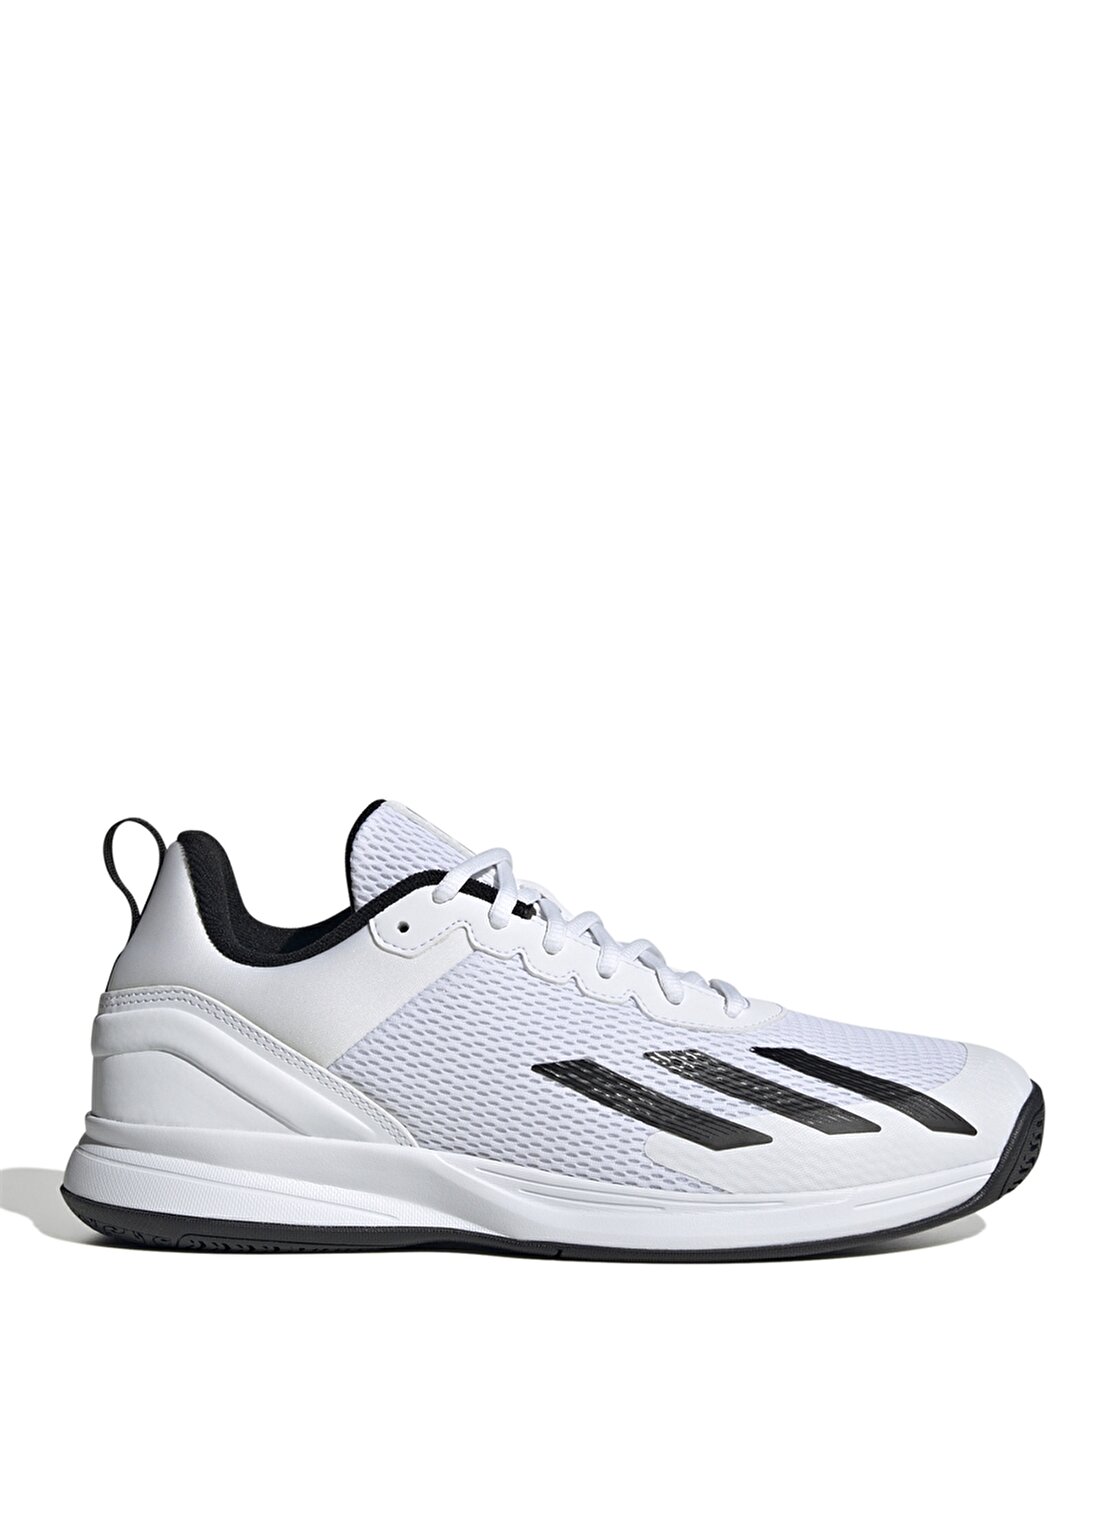 Adidas Beyaz Erkek Tenis Ayakkabısı IF0429 Courtflash